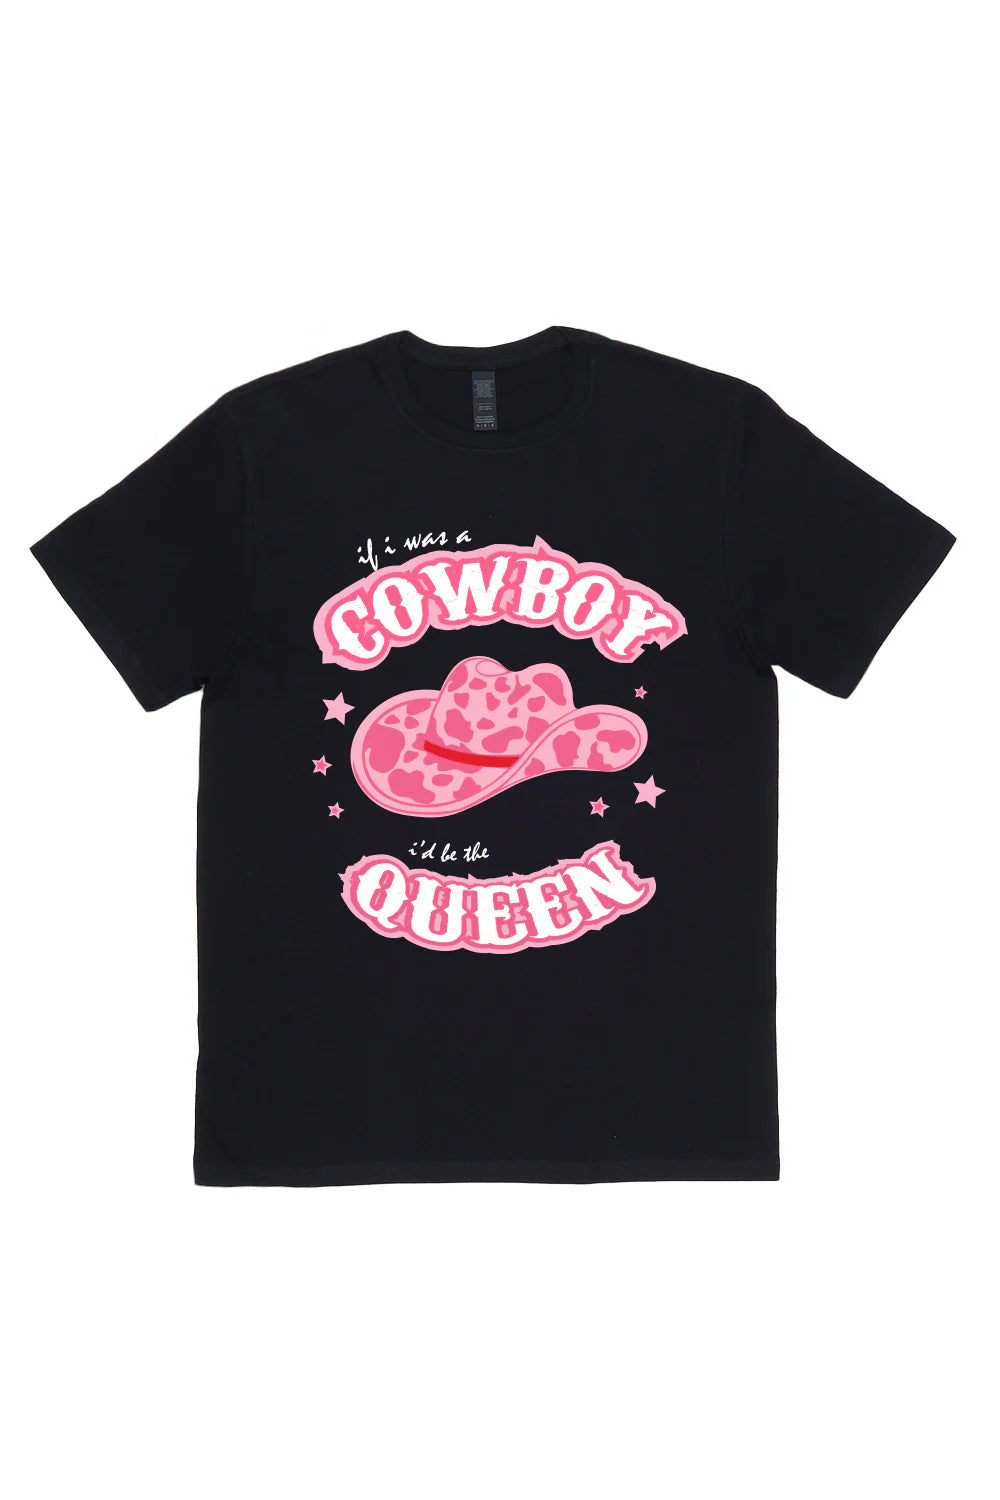 Cowboy Queen T-Shirt